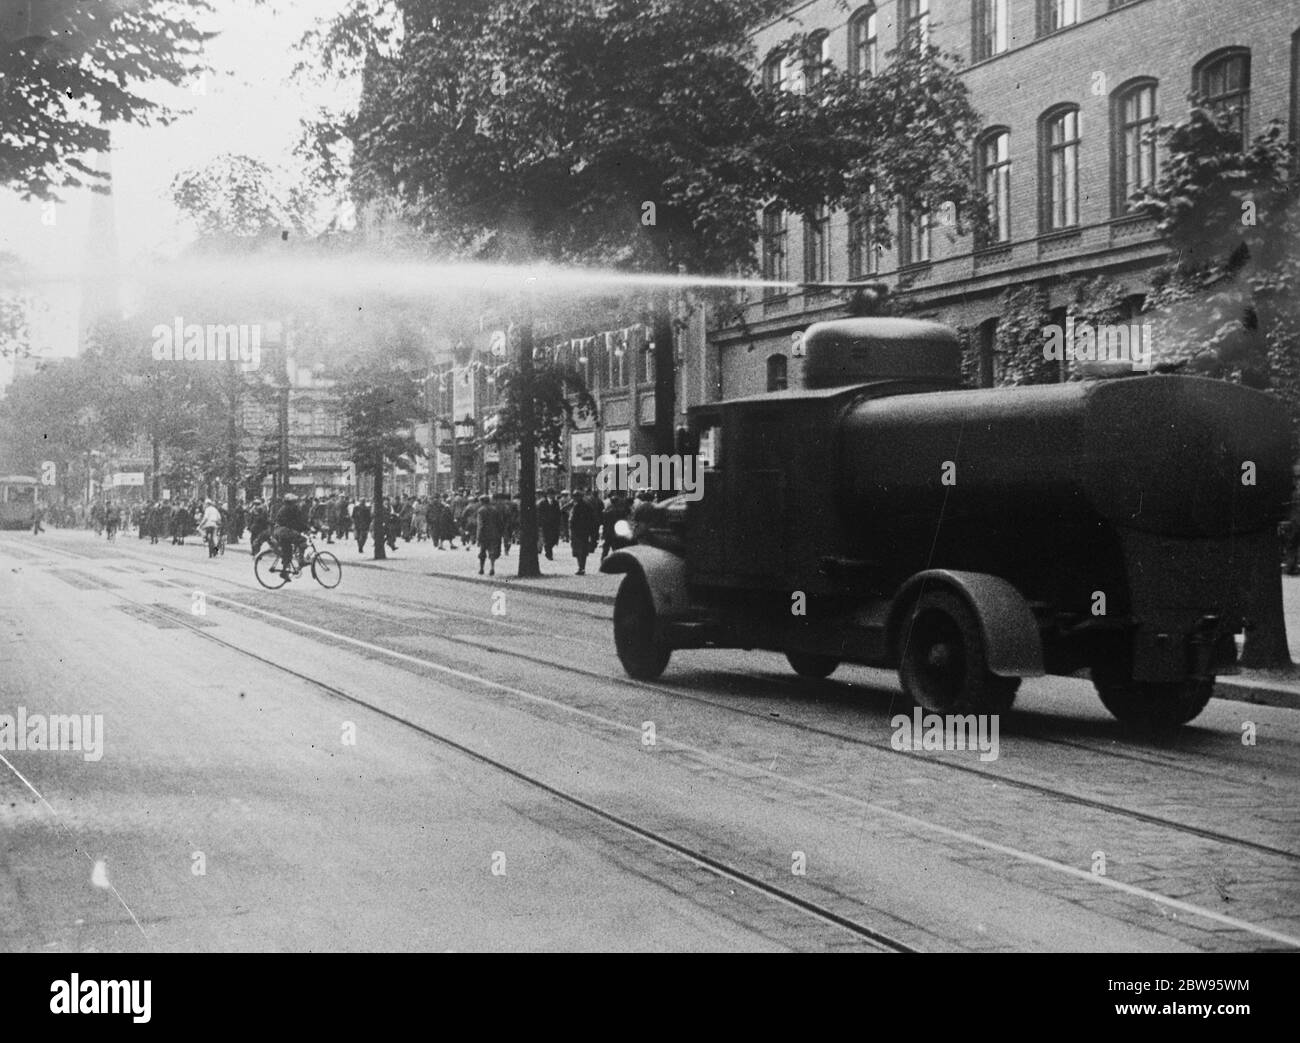 Die Polizei fährt mit Wasserbrötchen Randalierer aus Berliner Straßen. Mit mächtigen Wasserpistolen, montiert auf gepanzerten Lastwagen, fuhr die Polizei randalierenden Nazis und Kommunisten von den Straßen. Hunderte von Polizisten in Autos und Lastwagen wurden in die Vororte von Berlin, wo die Unruhen stattgefunden haben, eilig. Polizisten in Lastwagen werden zum Schauplatz der Störung in einem Vorort von Berlin gefahren. 27 Juni 1932 Stockfoto